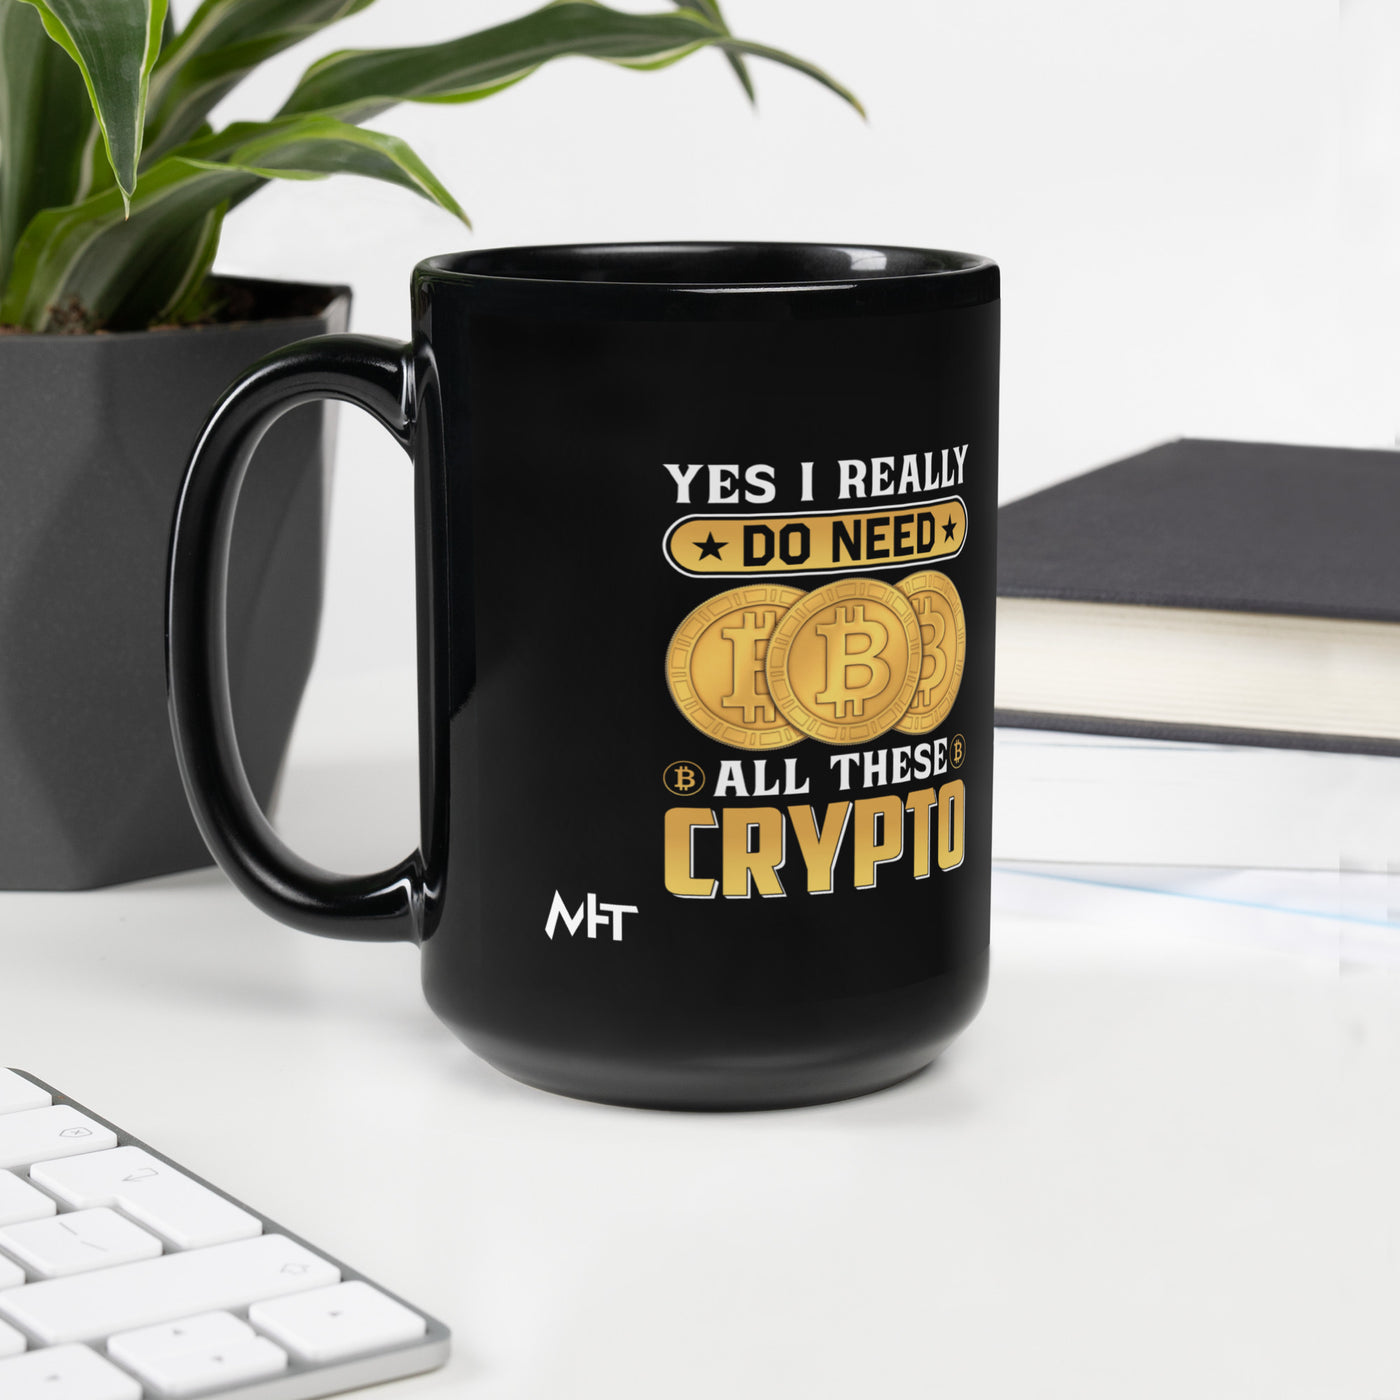 Yes, I really Do Need all these Bitcoin - Black Glossy Mug